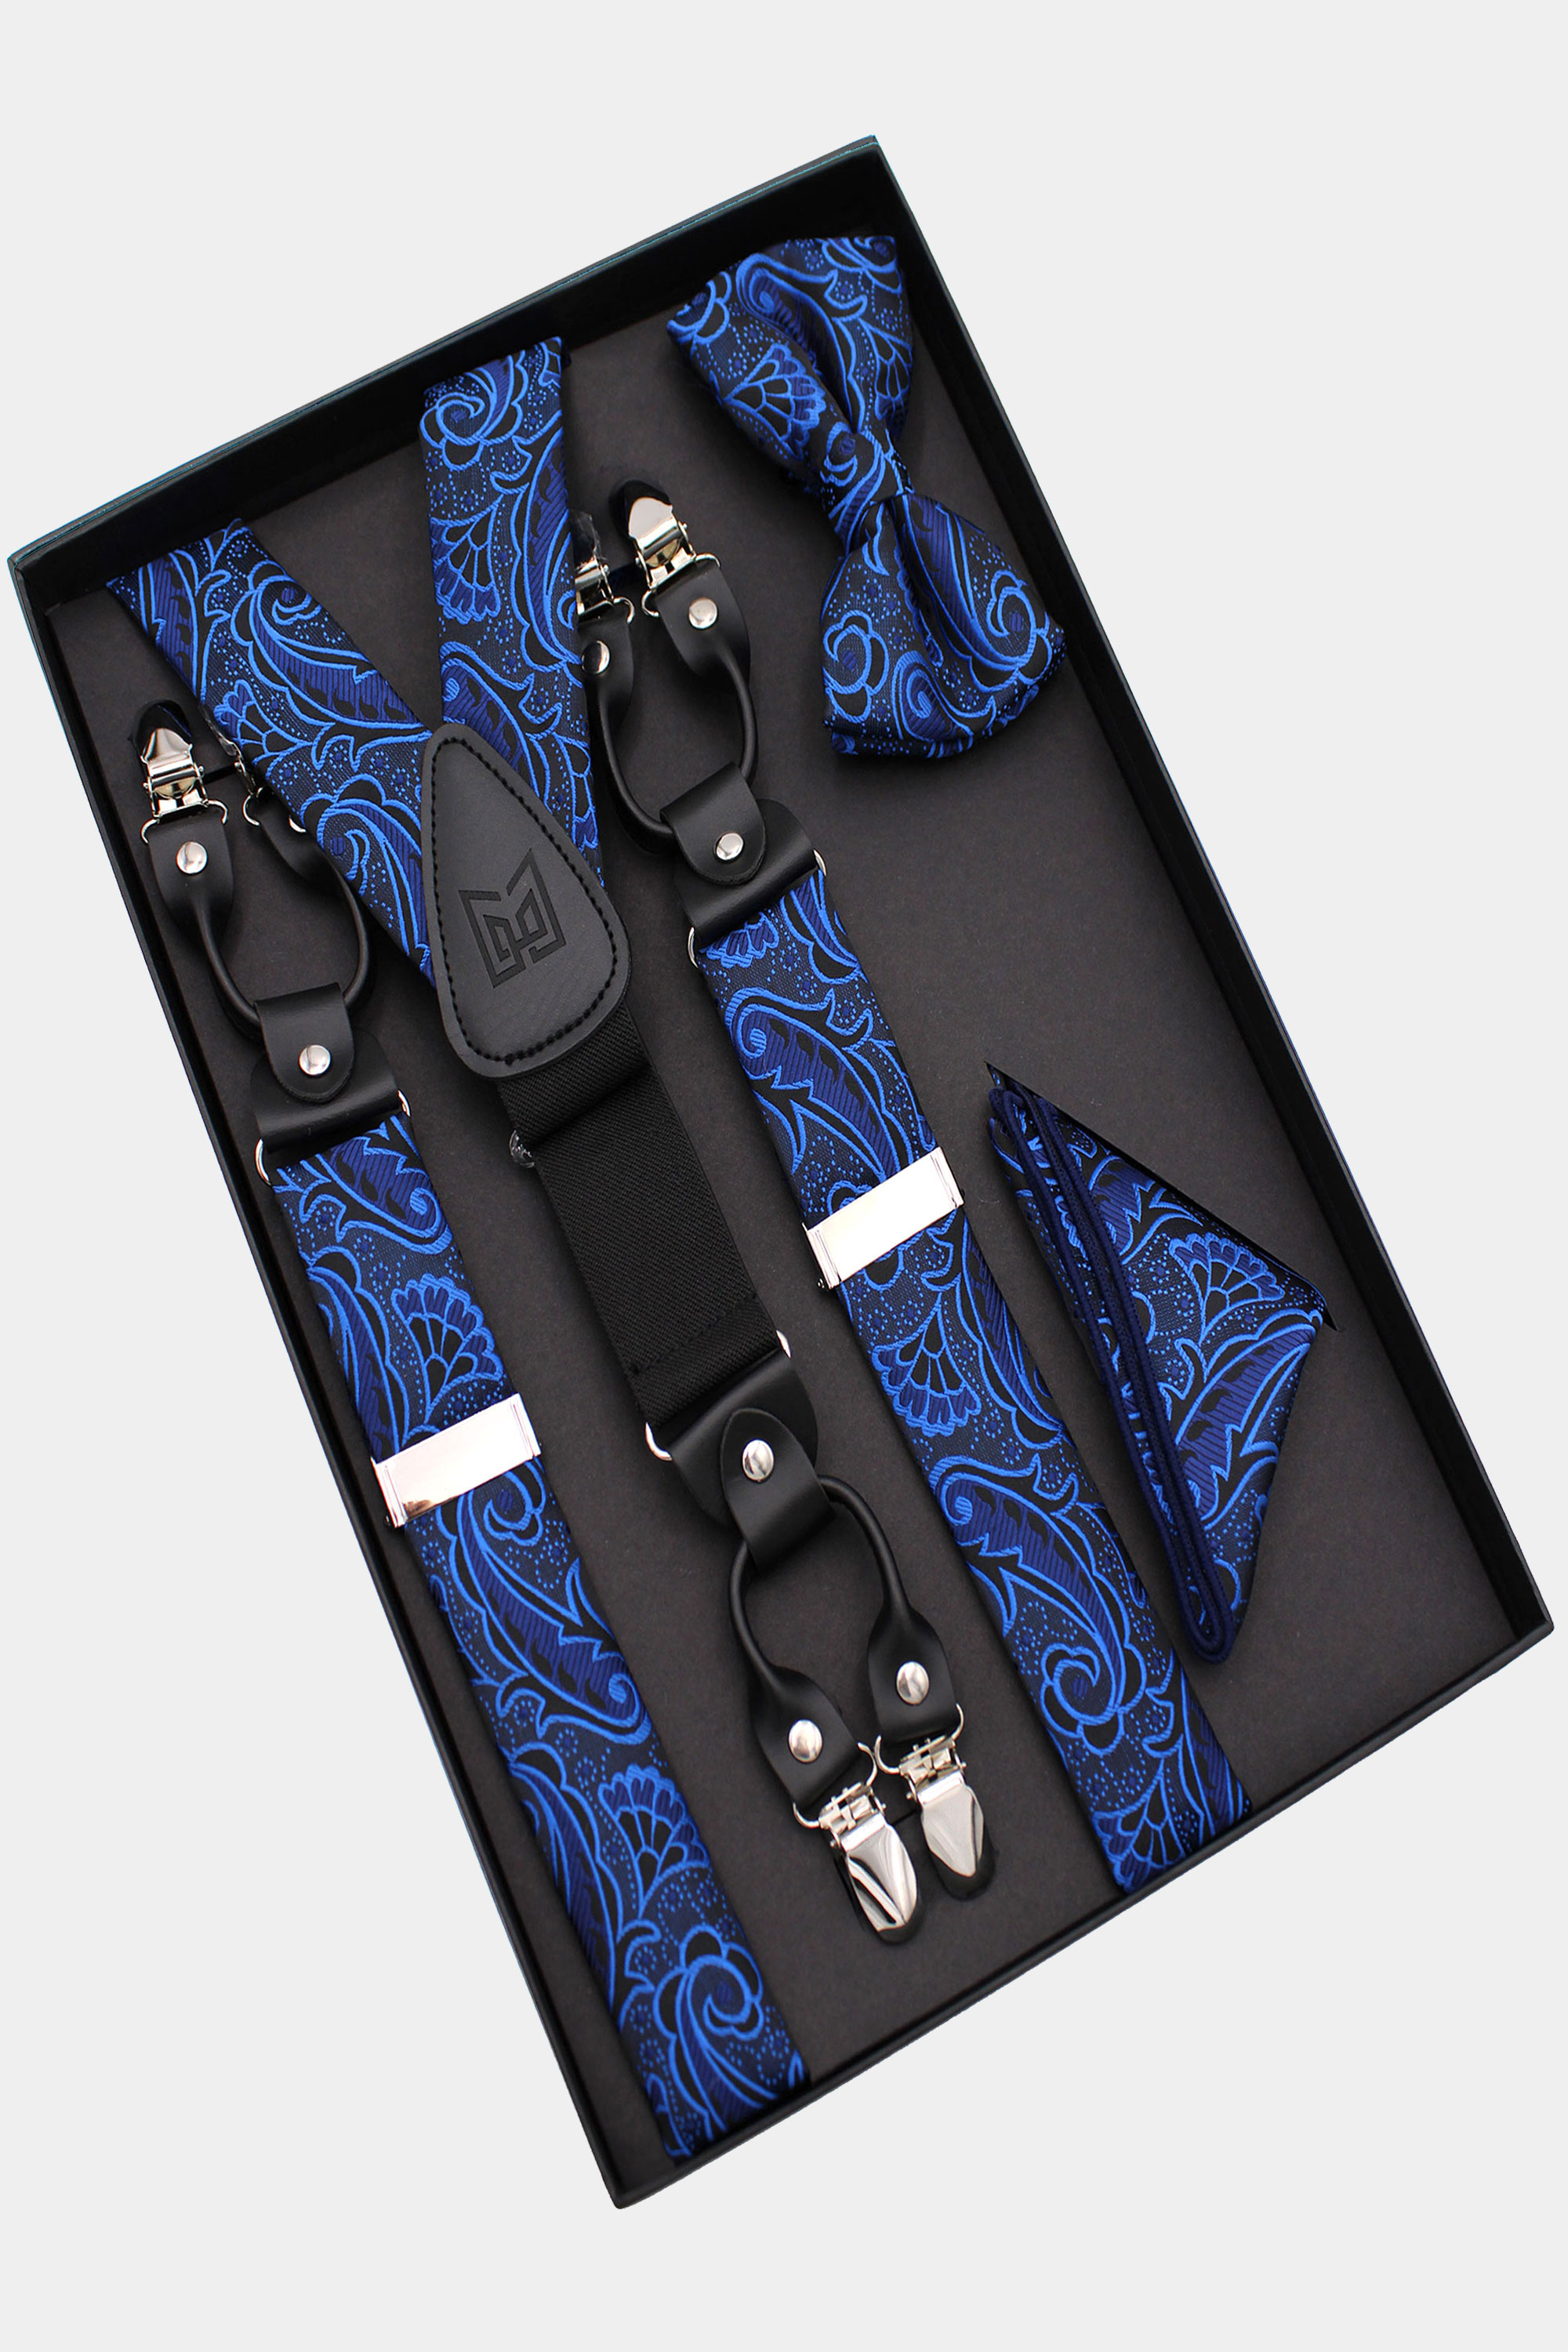 Mens-Royal-Blue-Bow-Tie-and-Suspenders-Set-Wedding-Groomsmen-Prom-from-Gentlemansguru.com_